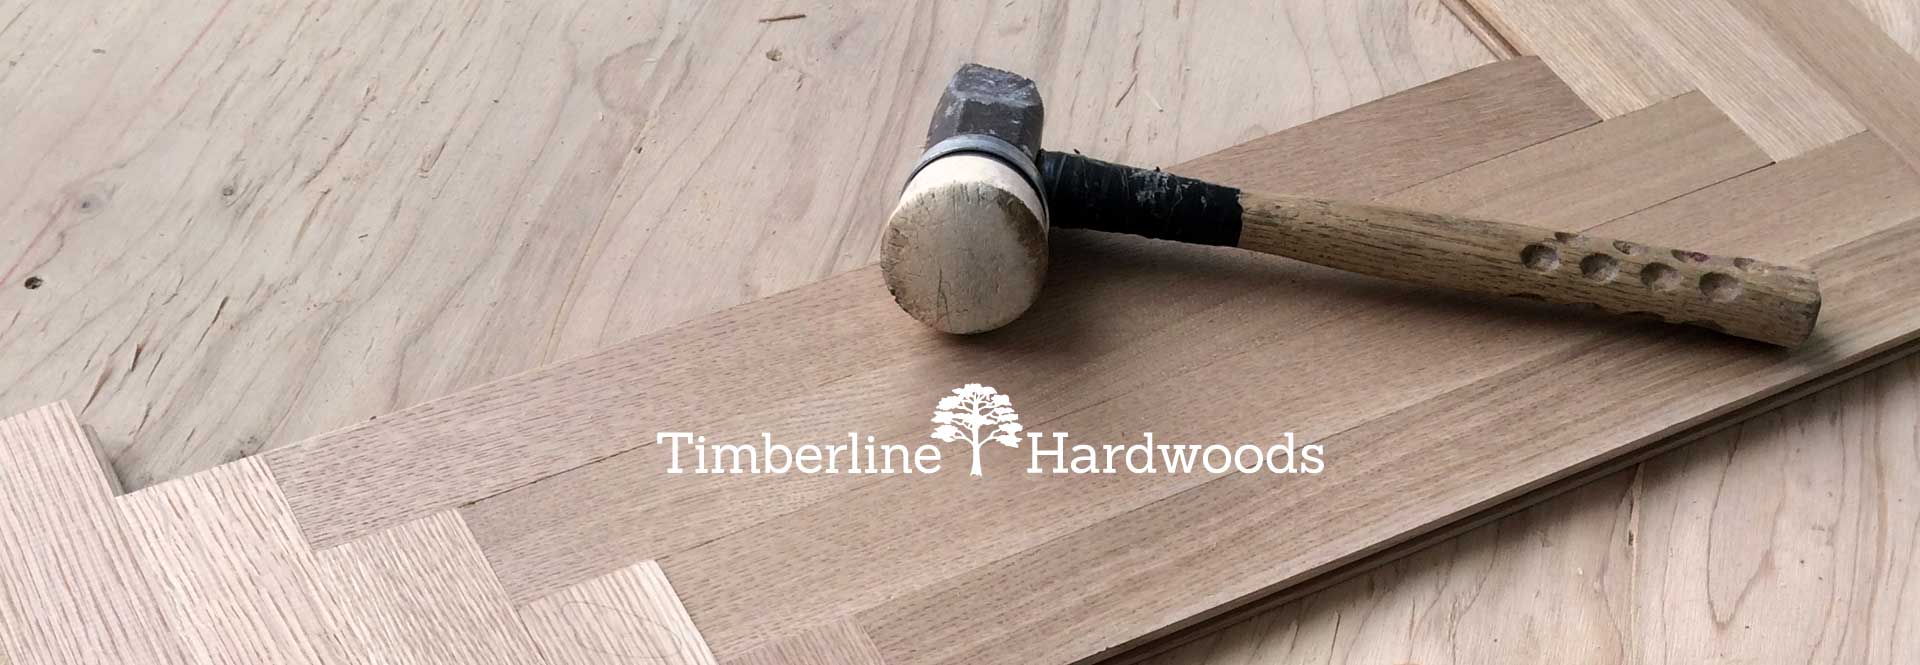 Timberline All State Fooring Distributors, Timberline Hardwood Floors Fulton Ny